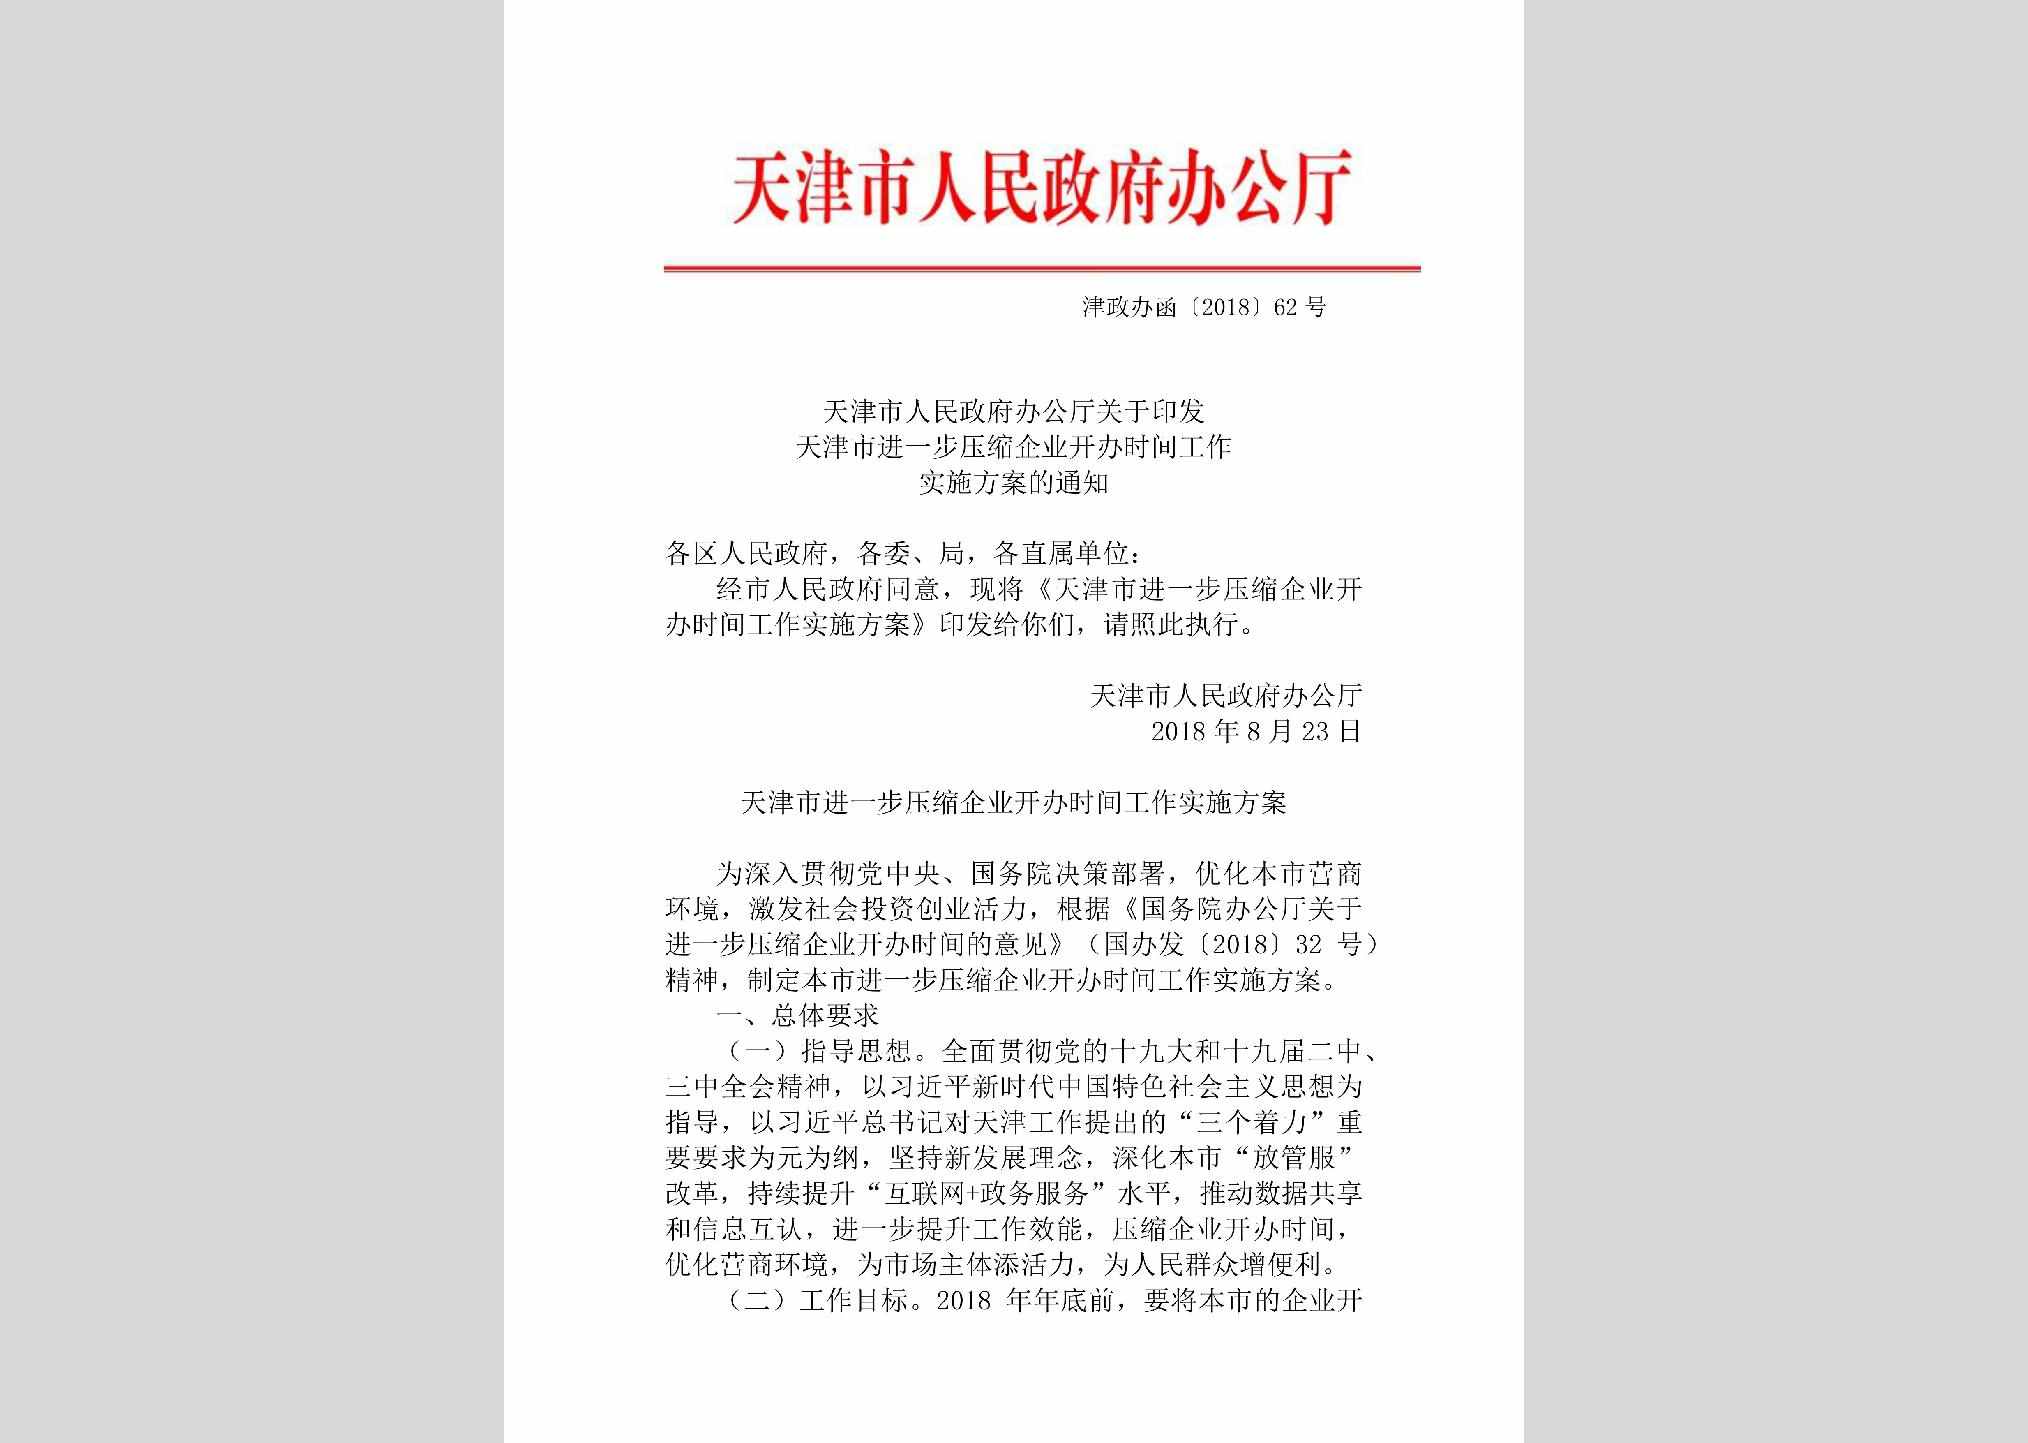 津政办函[2018]62号：天津市人民政府办公厅关于印发天津市进一步压缩企业开办时间工作实施方案的通知